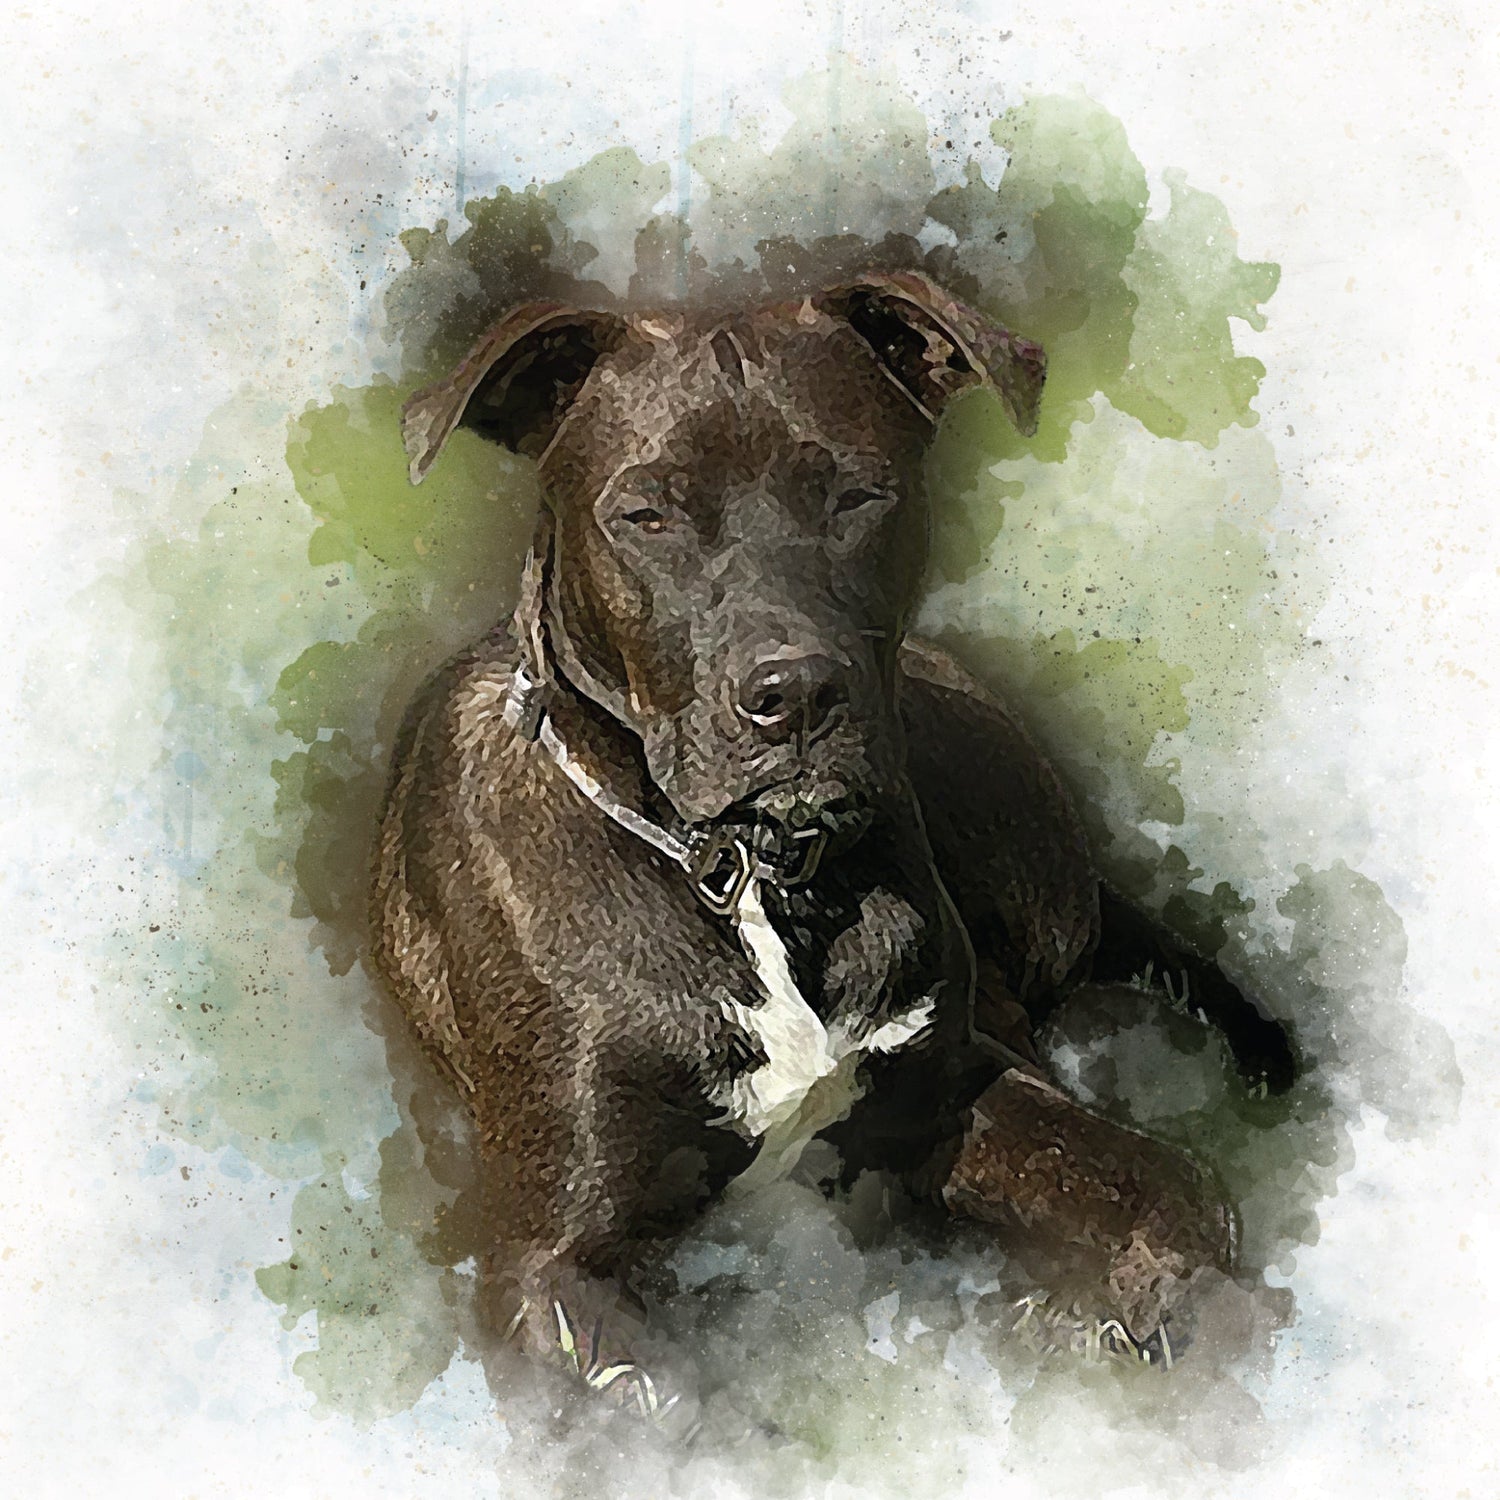 Canvas Prints - Custom Colorful Watercolor Pet Portrait